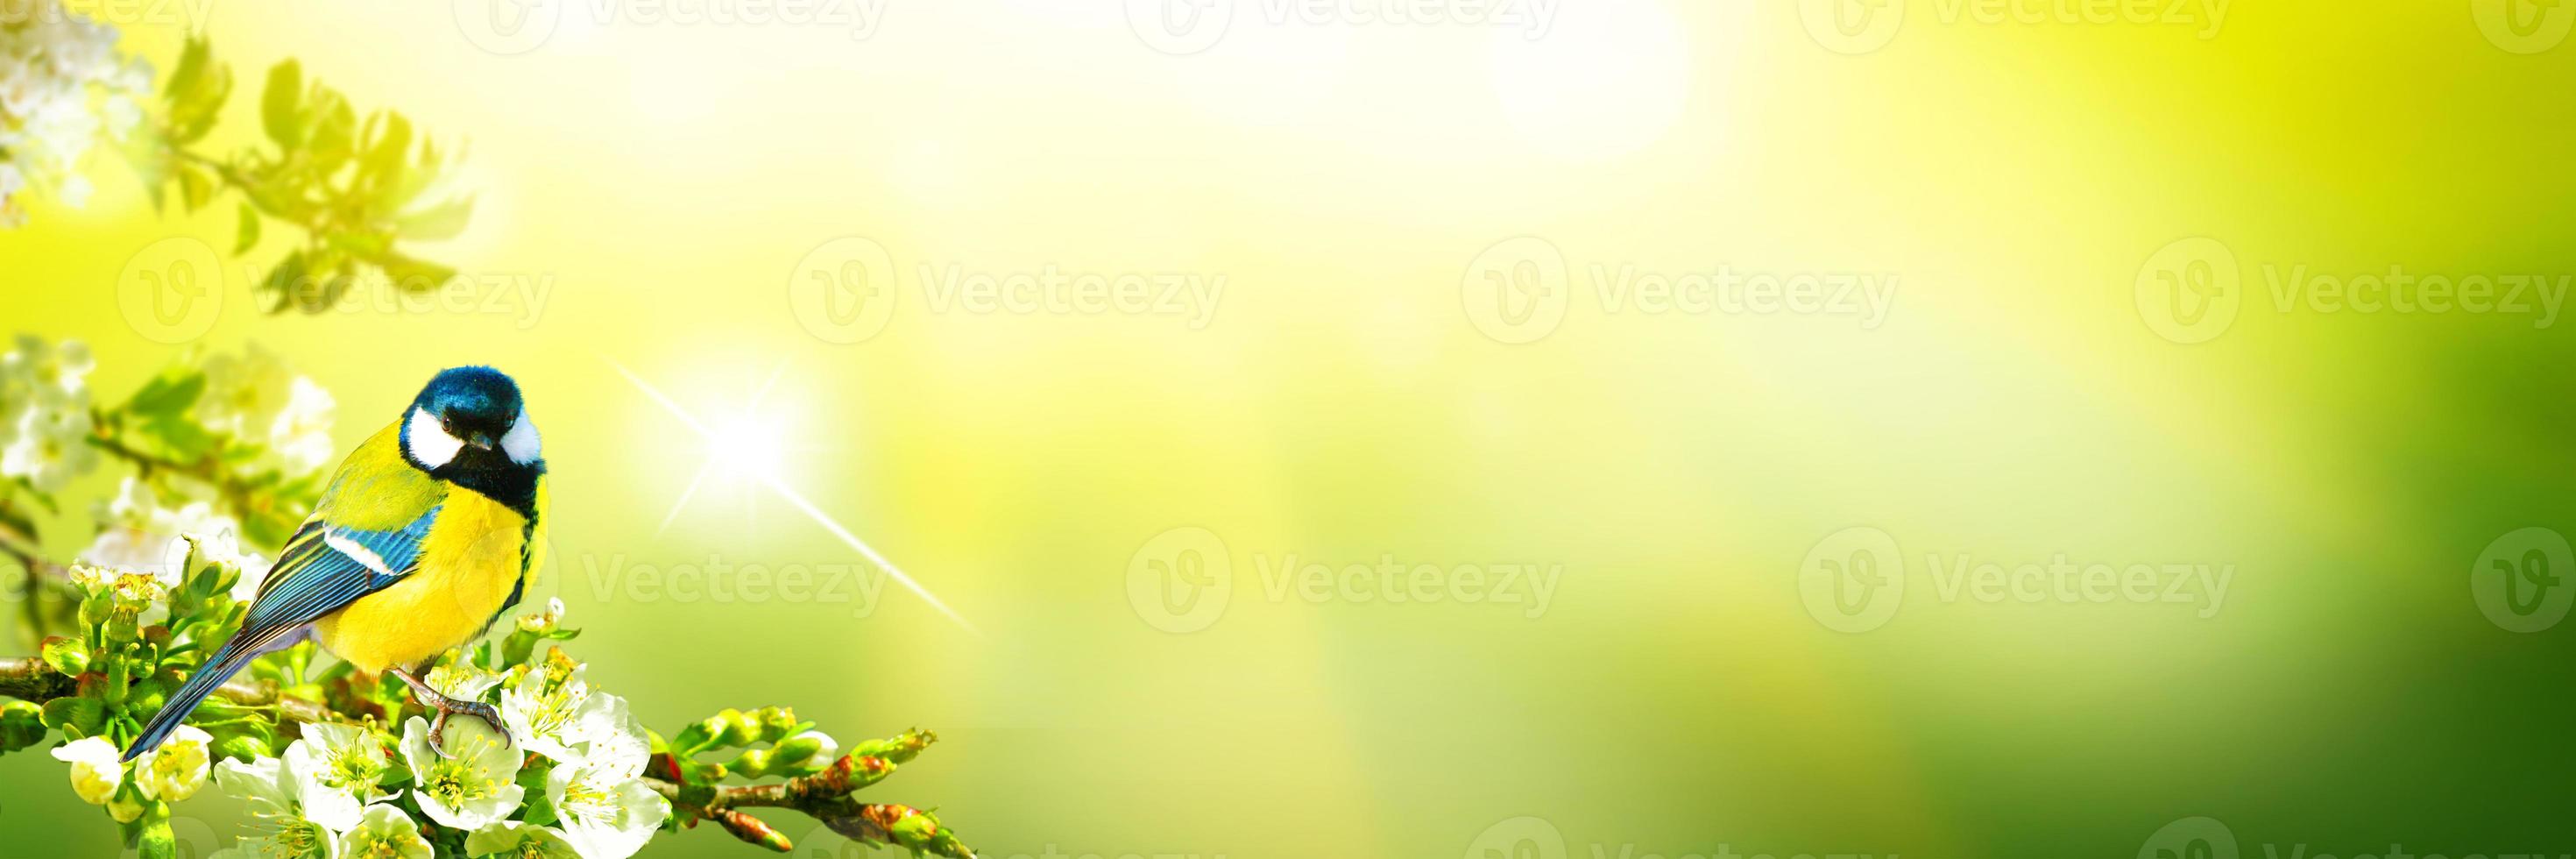 Kohlmeise sitzt bei Frühlingswetter auf einem Ast foto